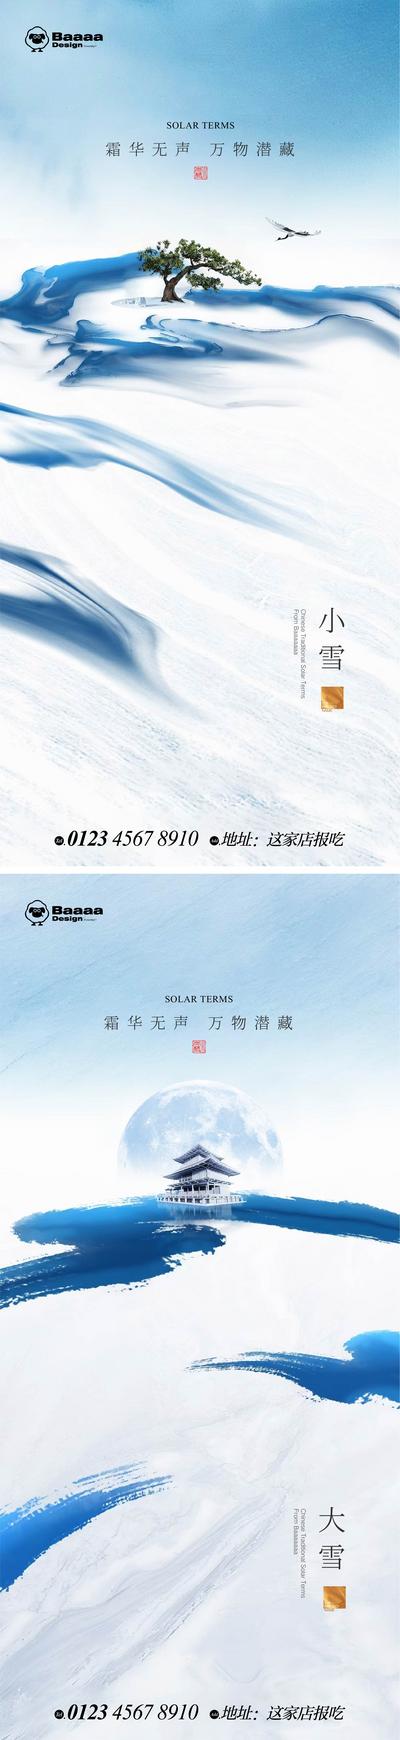 南门网 广告 海报 节气 中式 小雪 大雪 书法 意境 版式 庭院